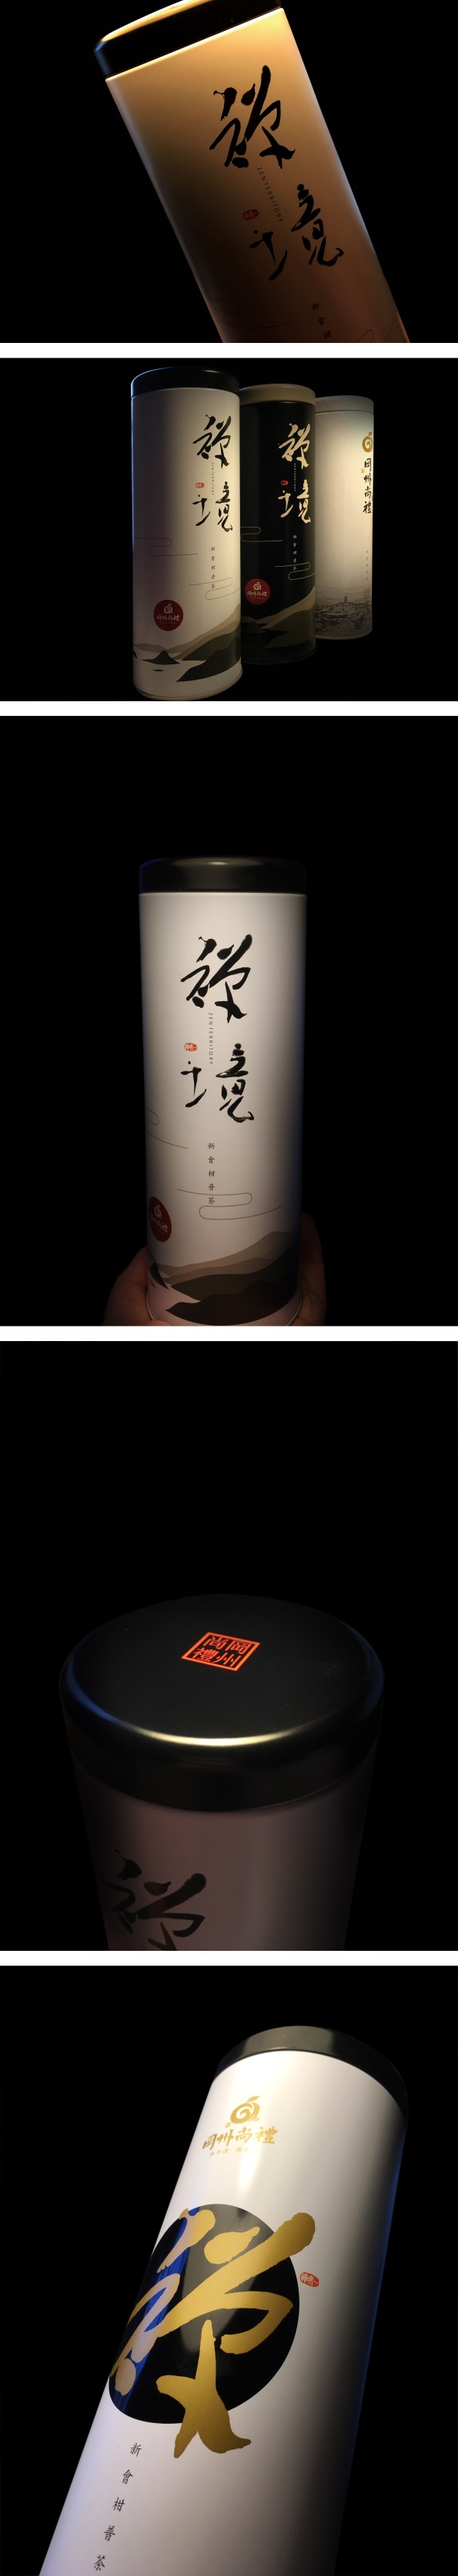 冈州尚礼柑普茶茶罐系列包装设计